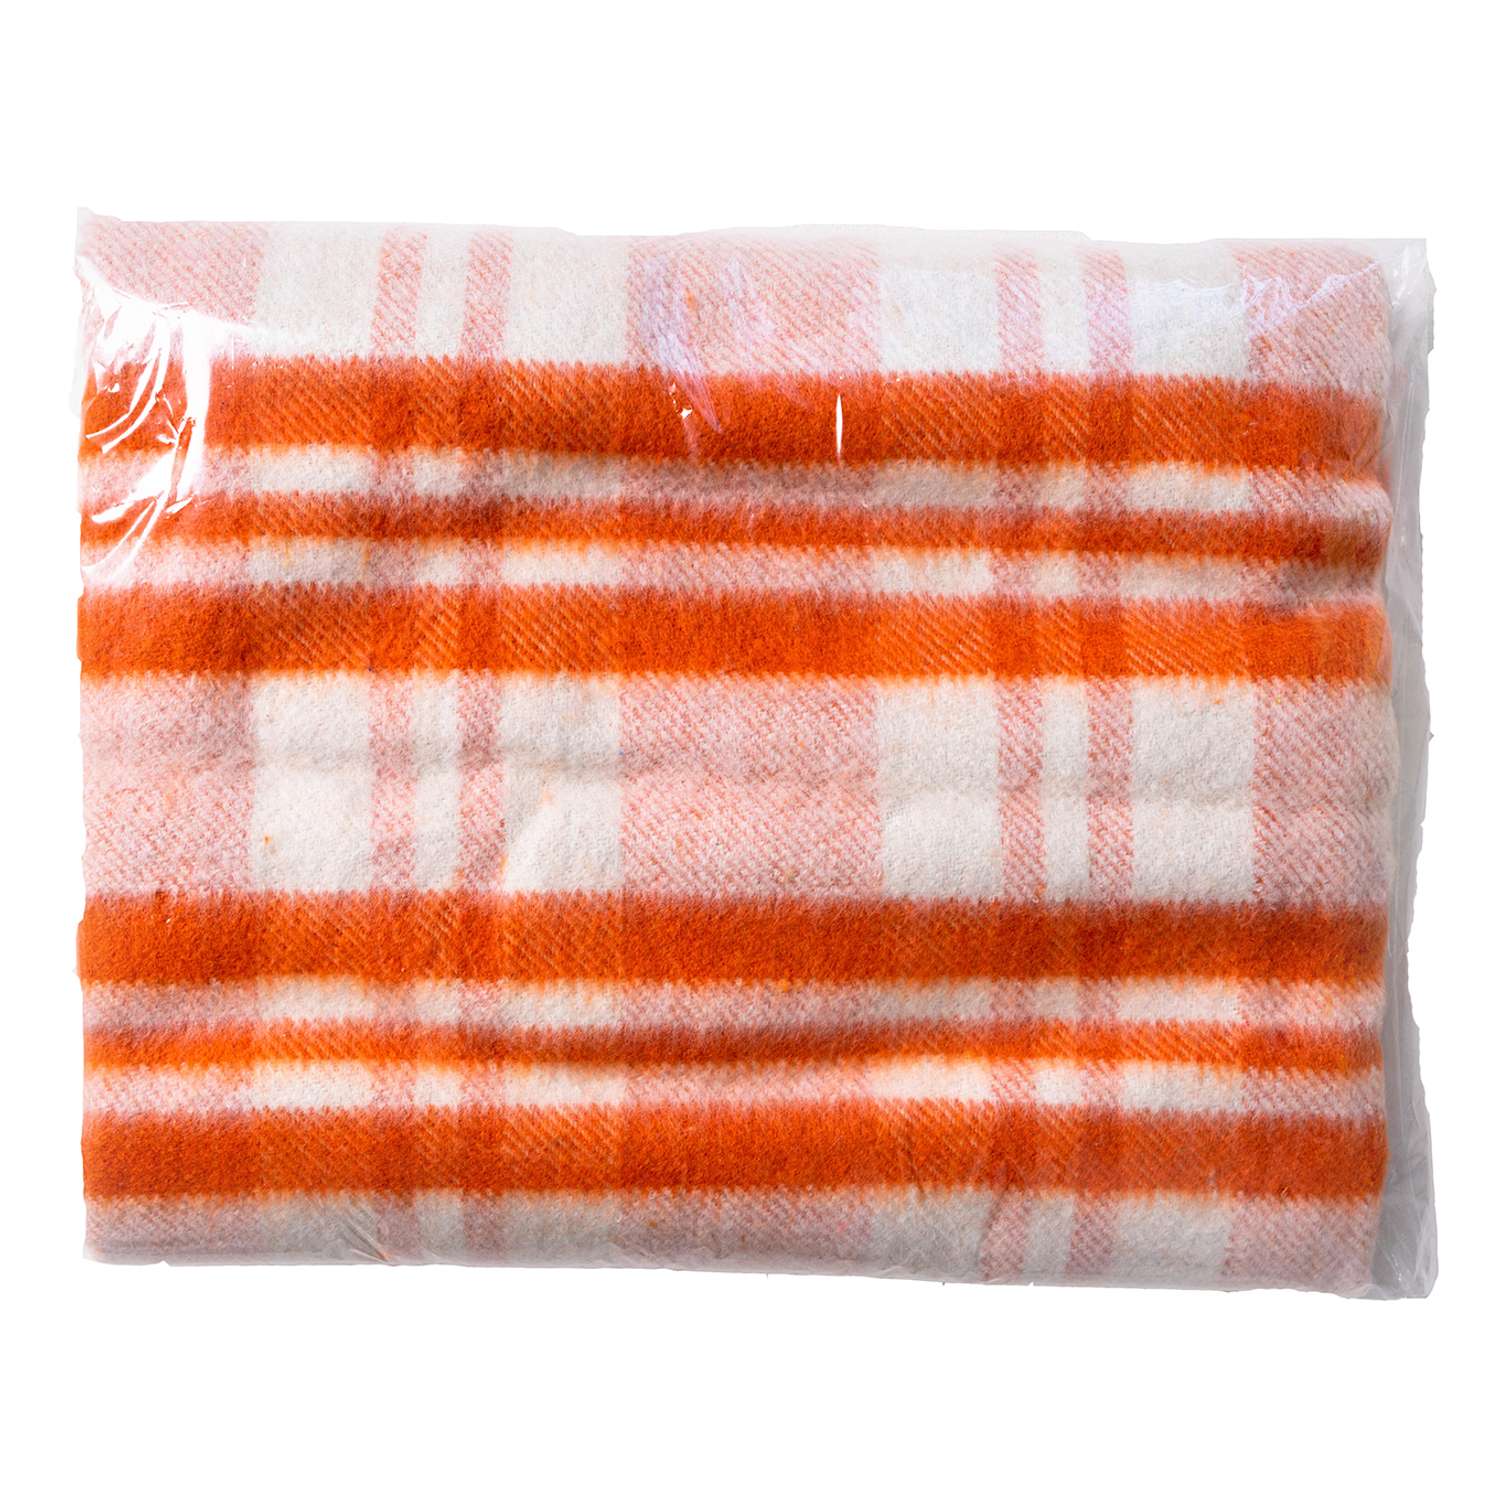 Одеяло байковое детское Суконная фабрика г. Шуя 100х140 рисунок мадрид оранжевый - фото 1